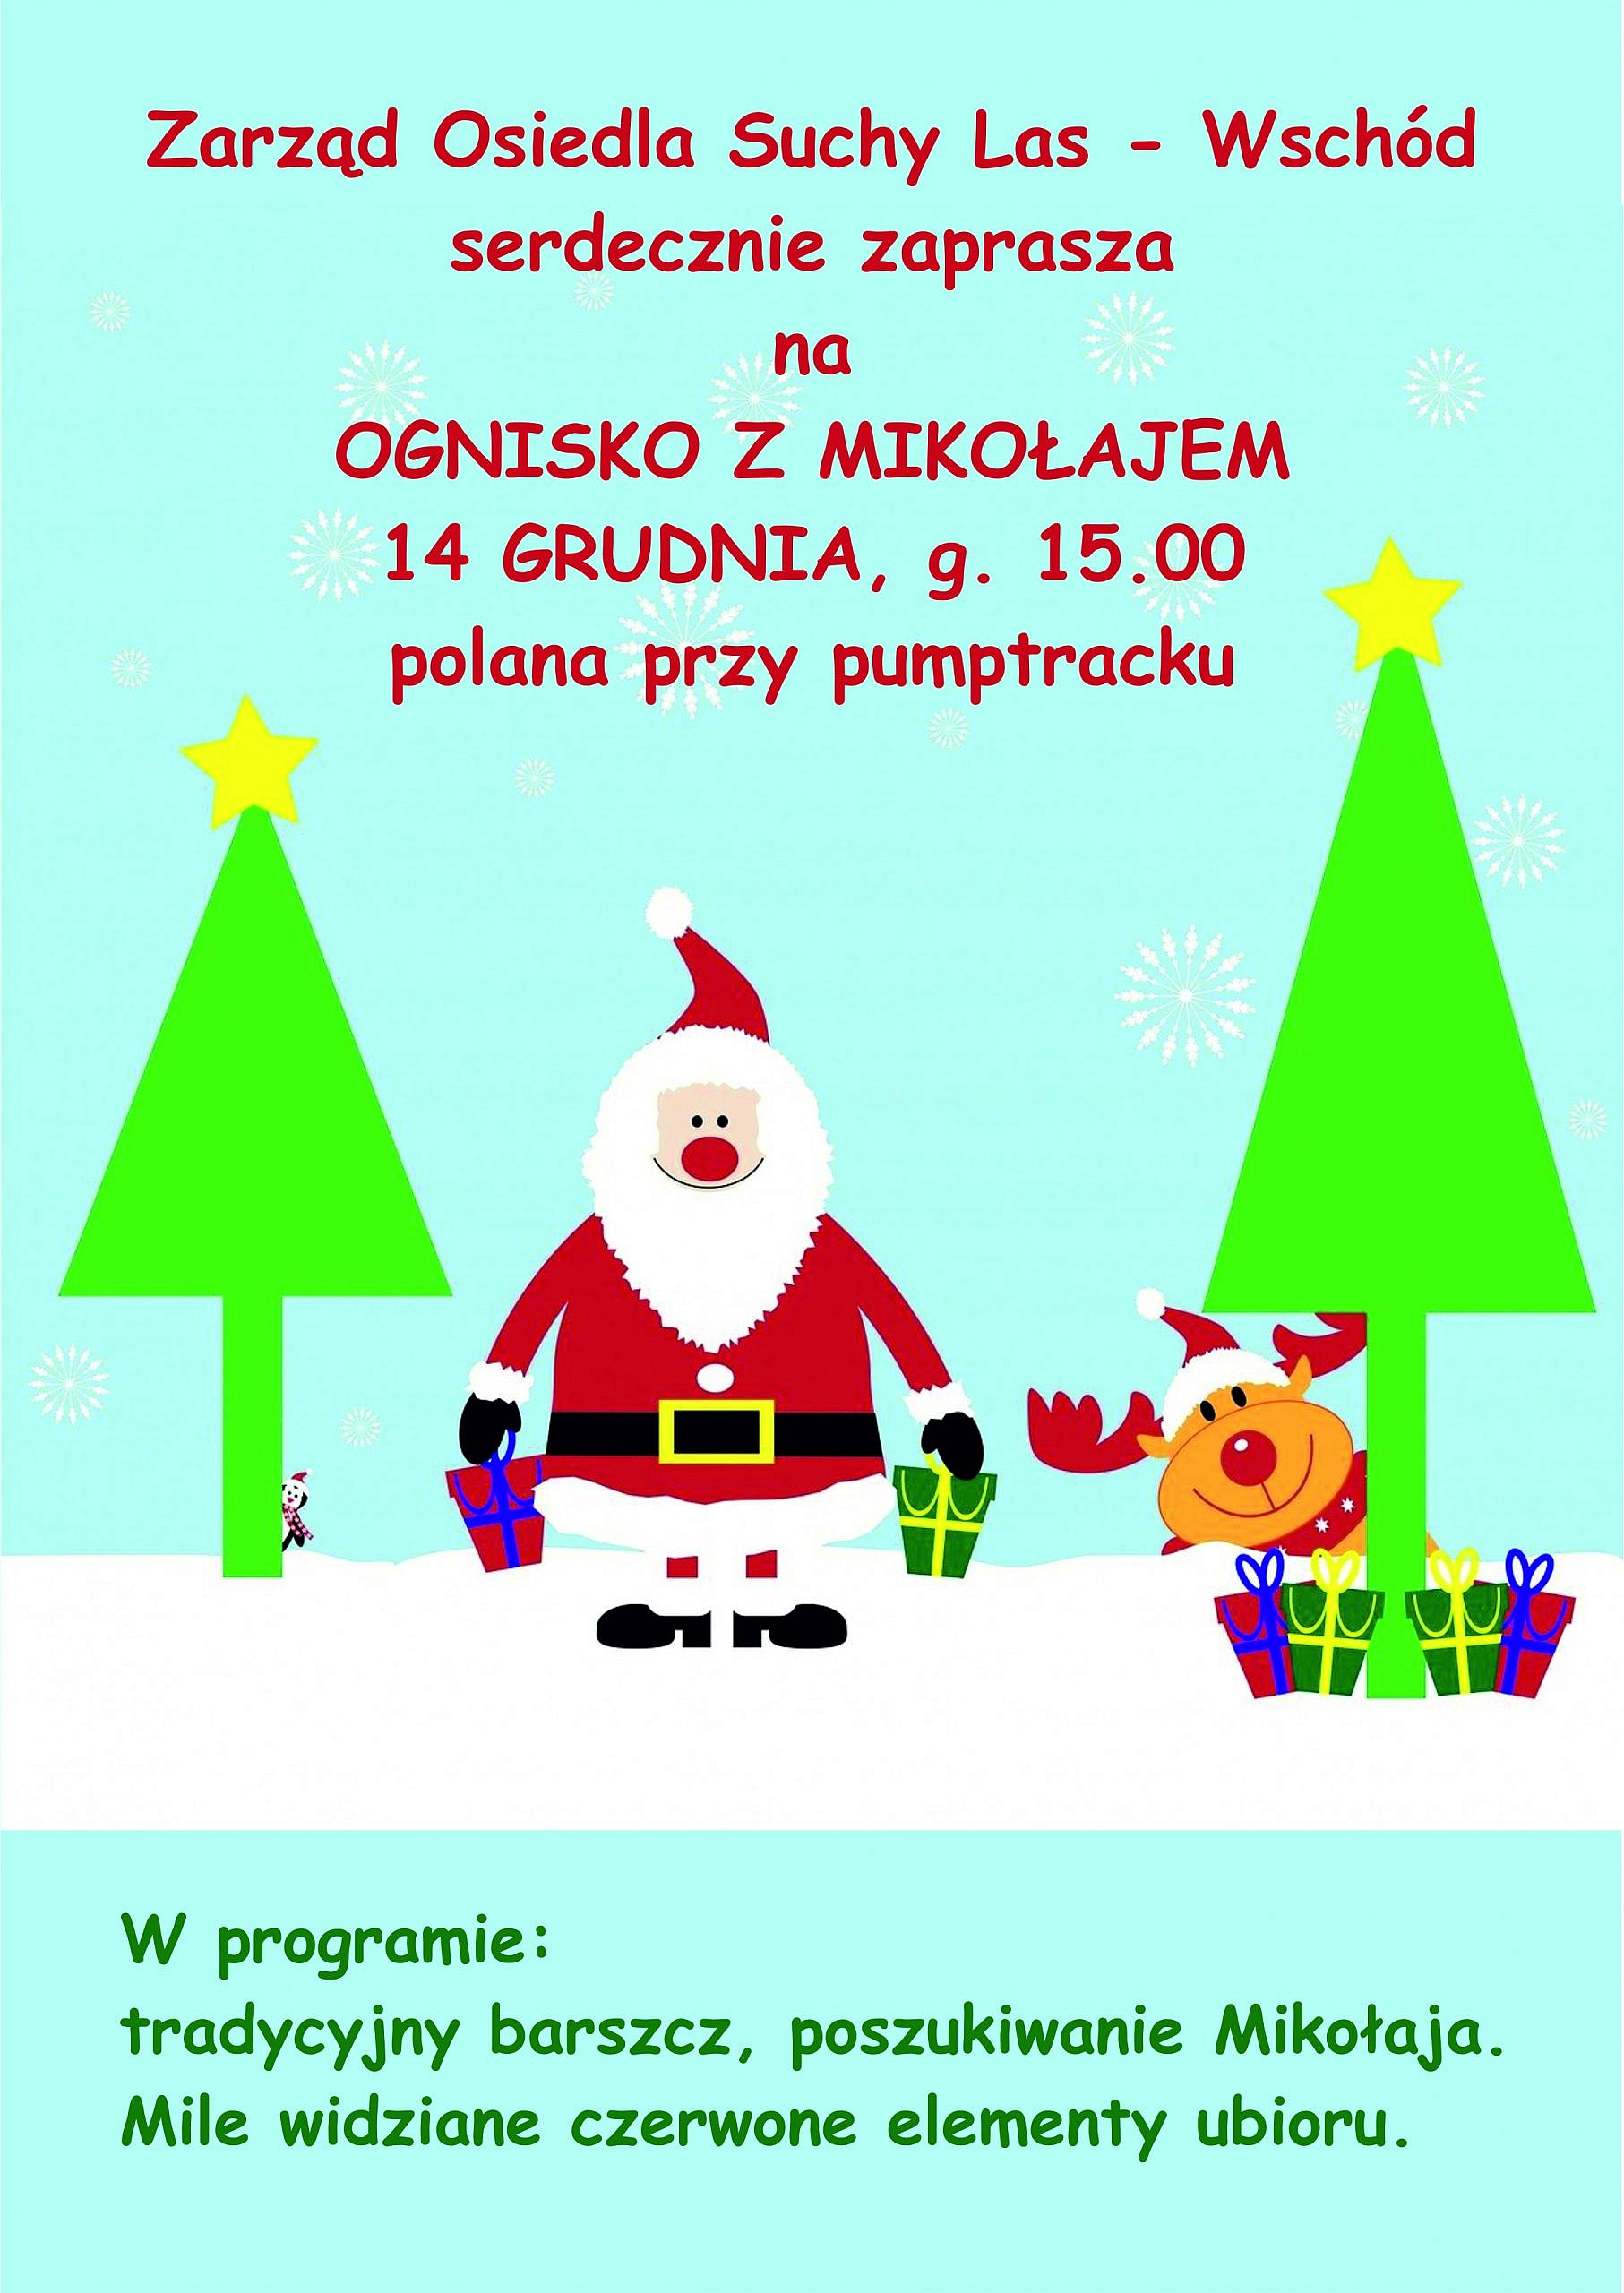 grafika z mikołajem, reniferem, choinkami i prezentami informująca o Ognisku z Mikołajem 14 grudnia o godz. 15:00 na polanie przy pumptracku